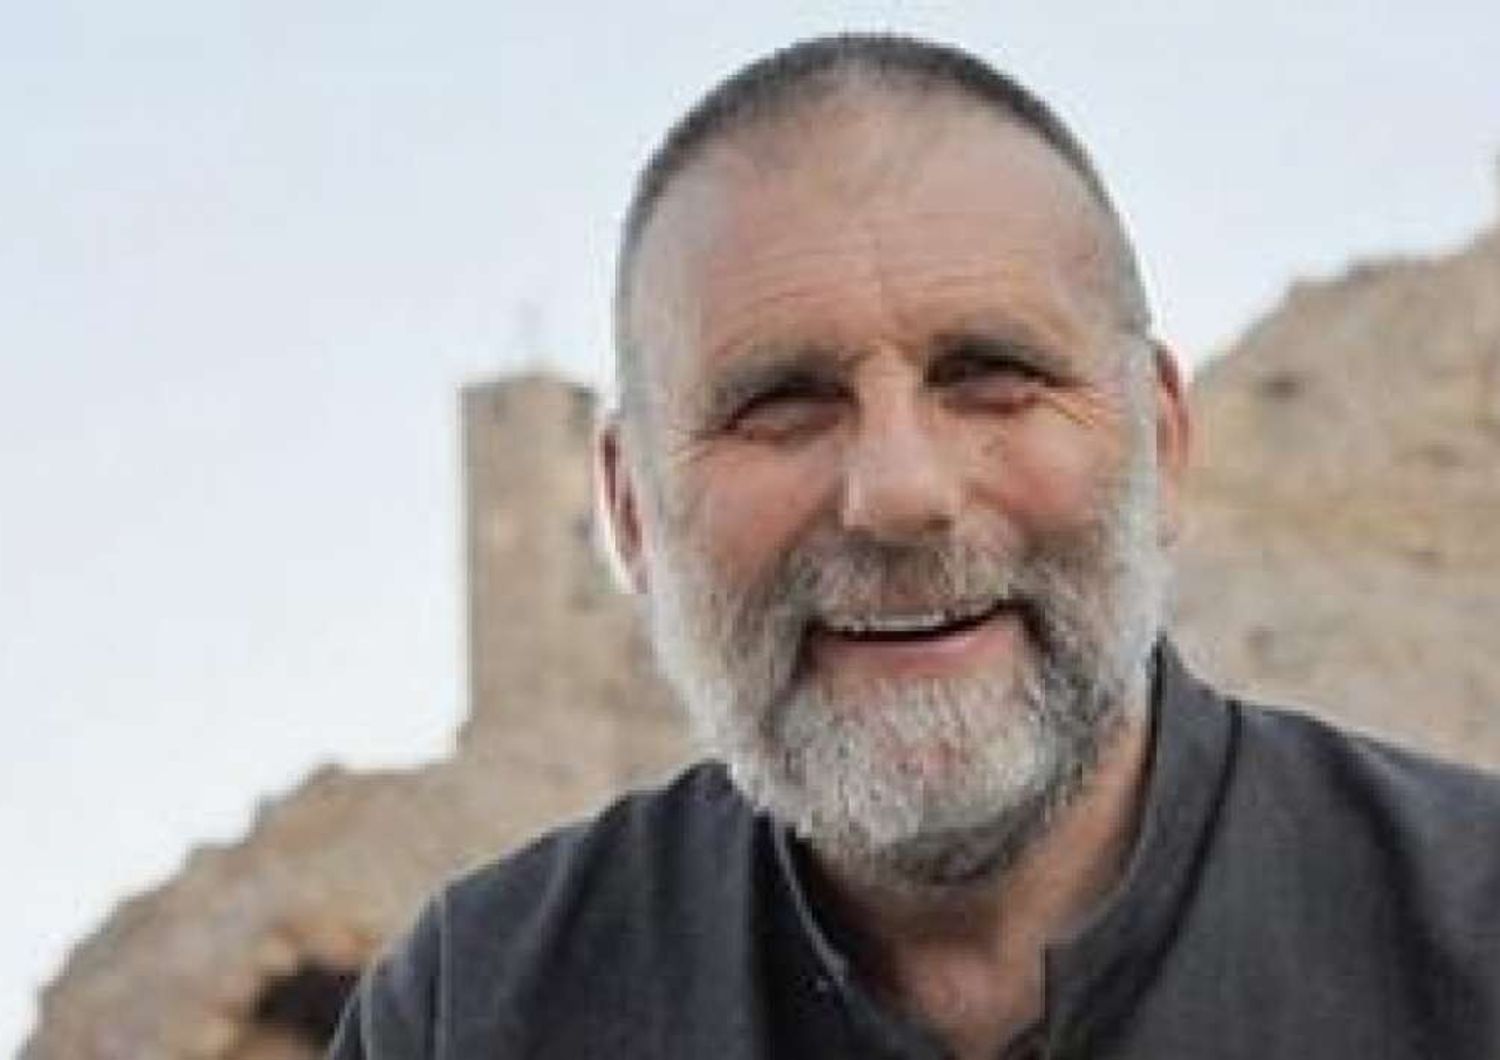 &nbsp;padre Paolo dall'Oglio rapito prigioniero in Libia